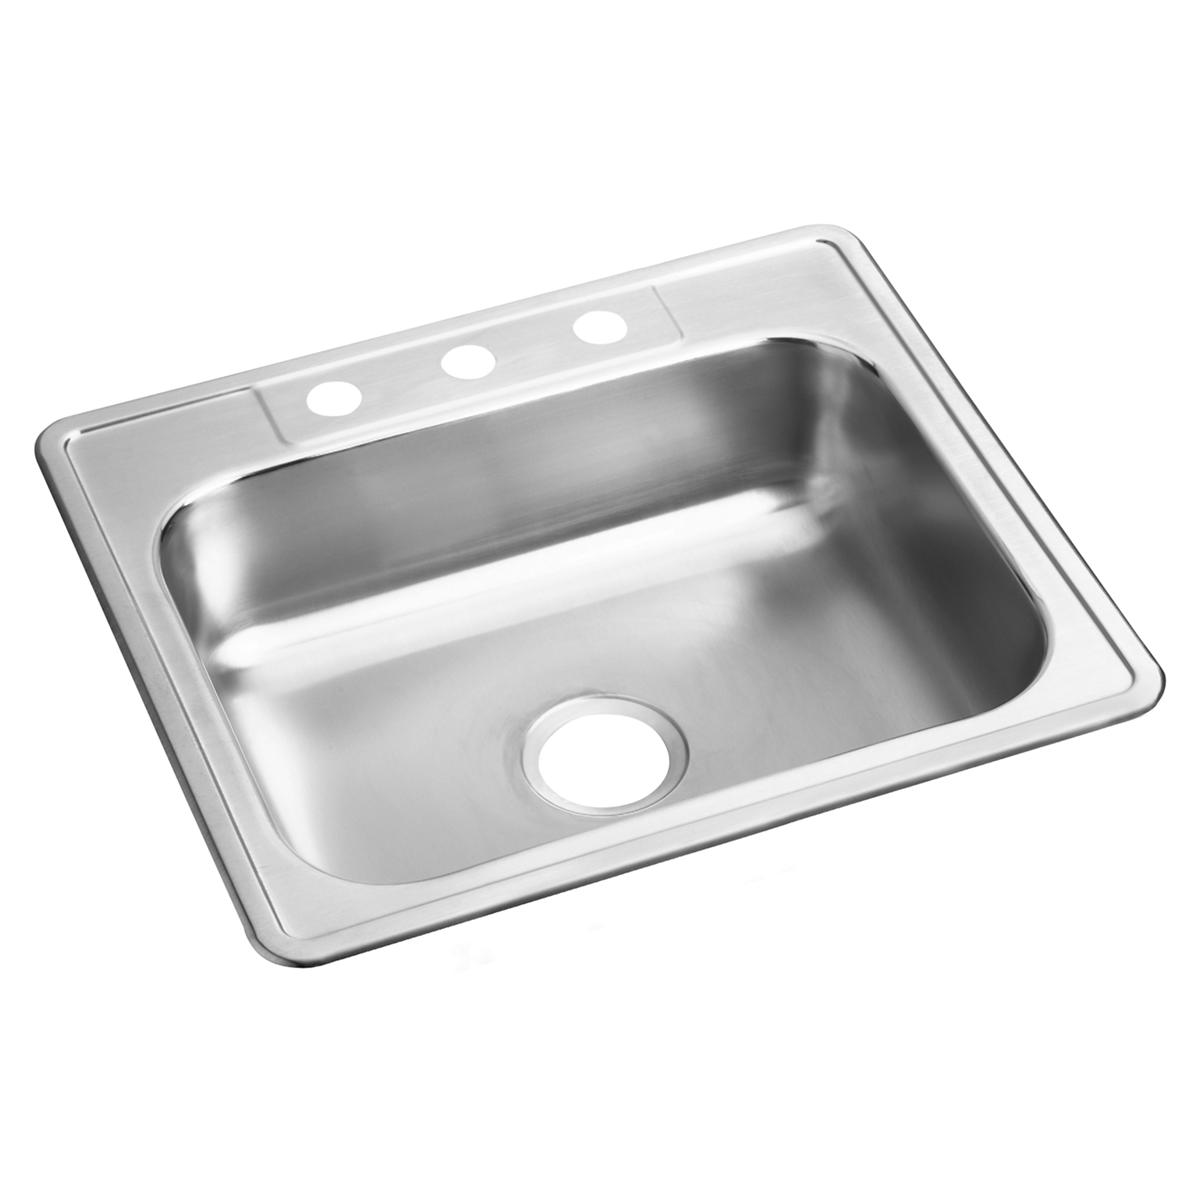 Elkay Stainless Steel Single Bowl Drop-in Sink 1129035